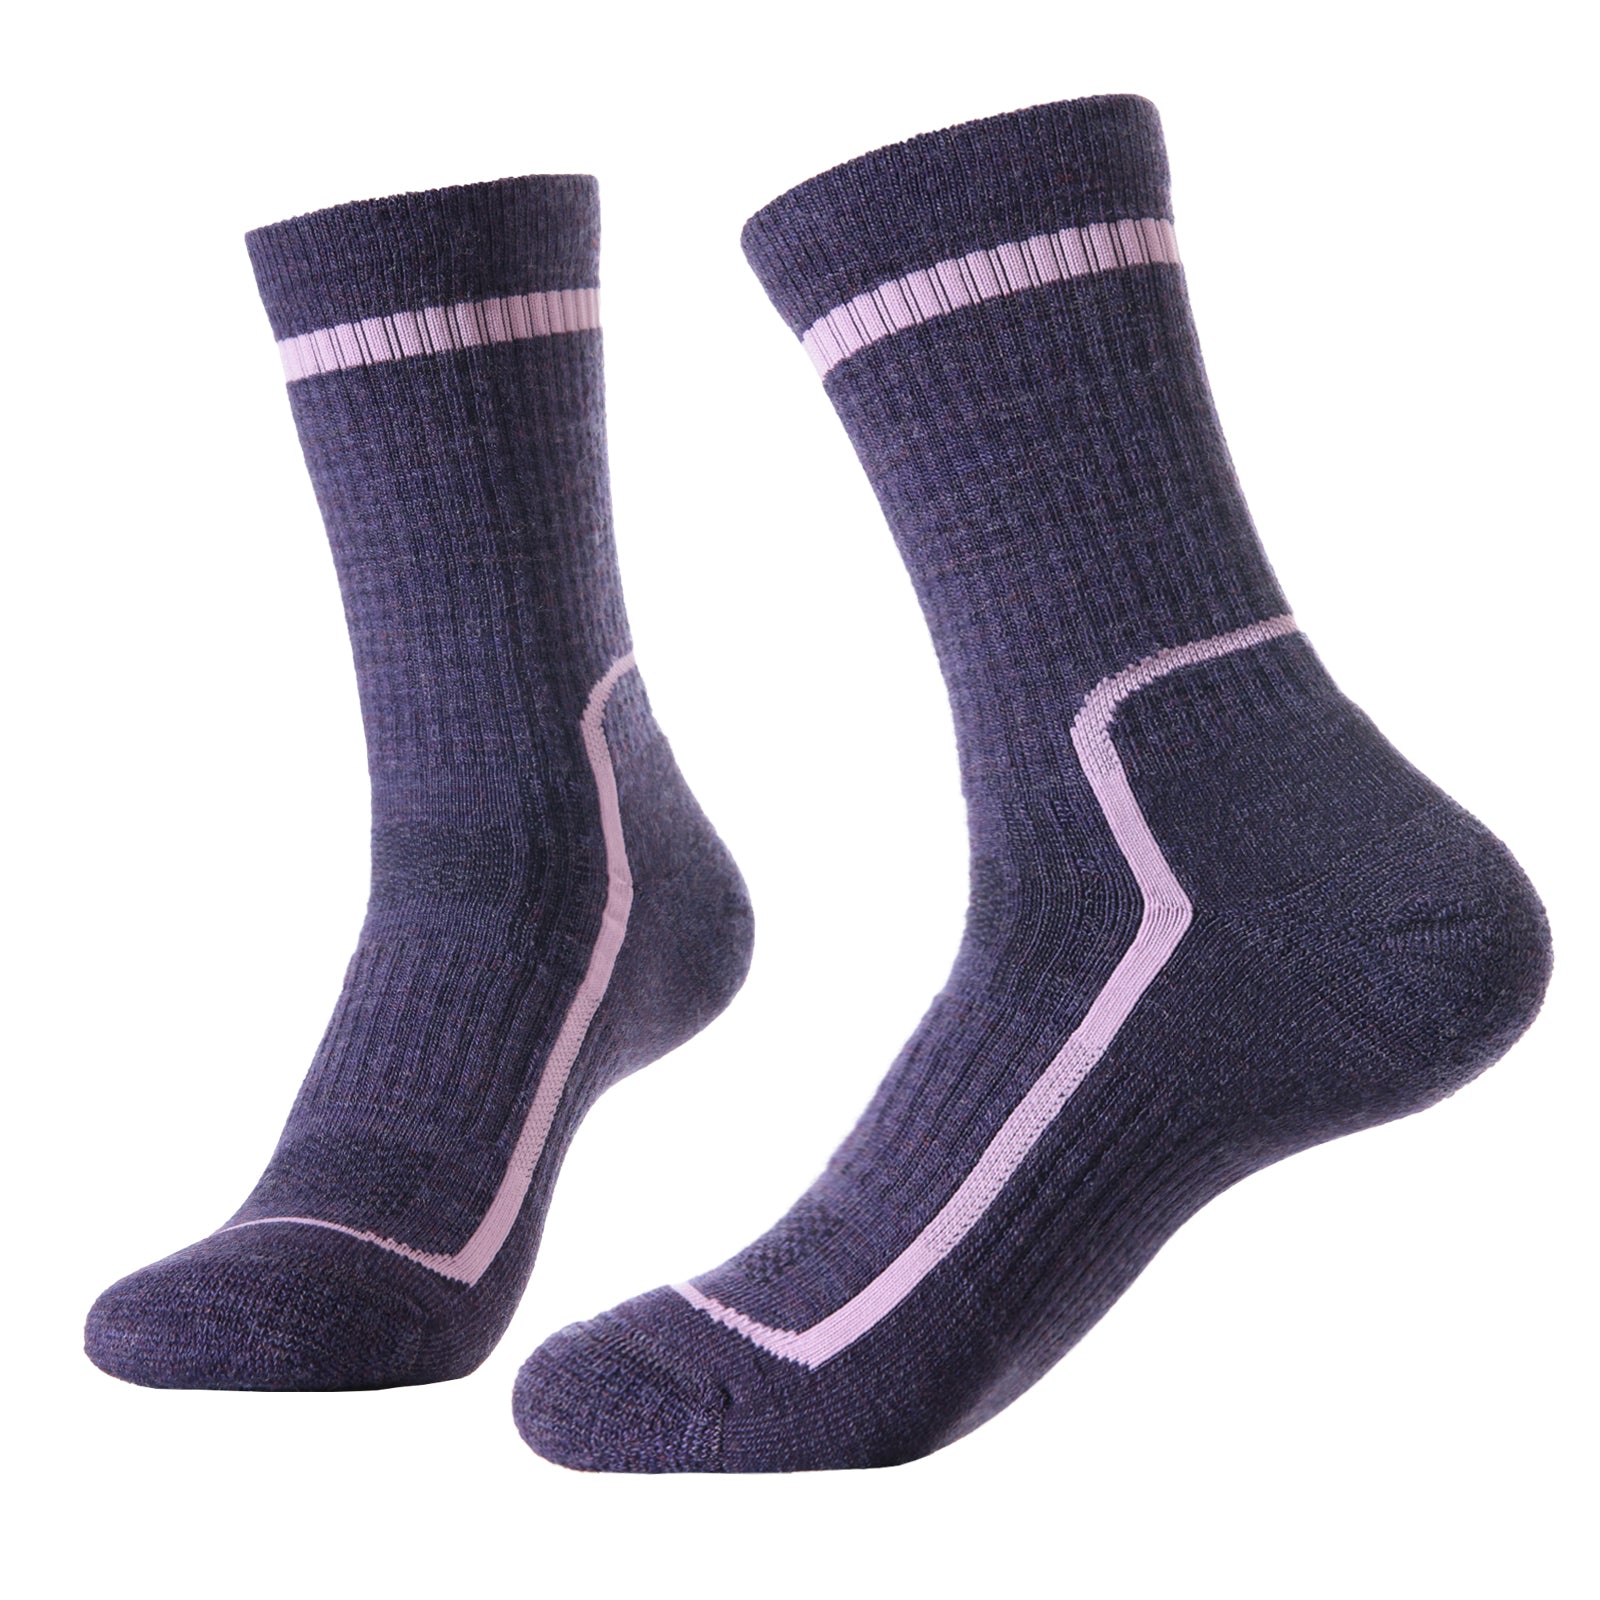 SOLAX 3 pairs Women's Merino wool Crew socks